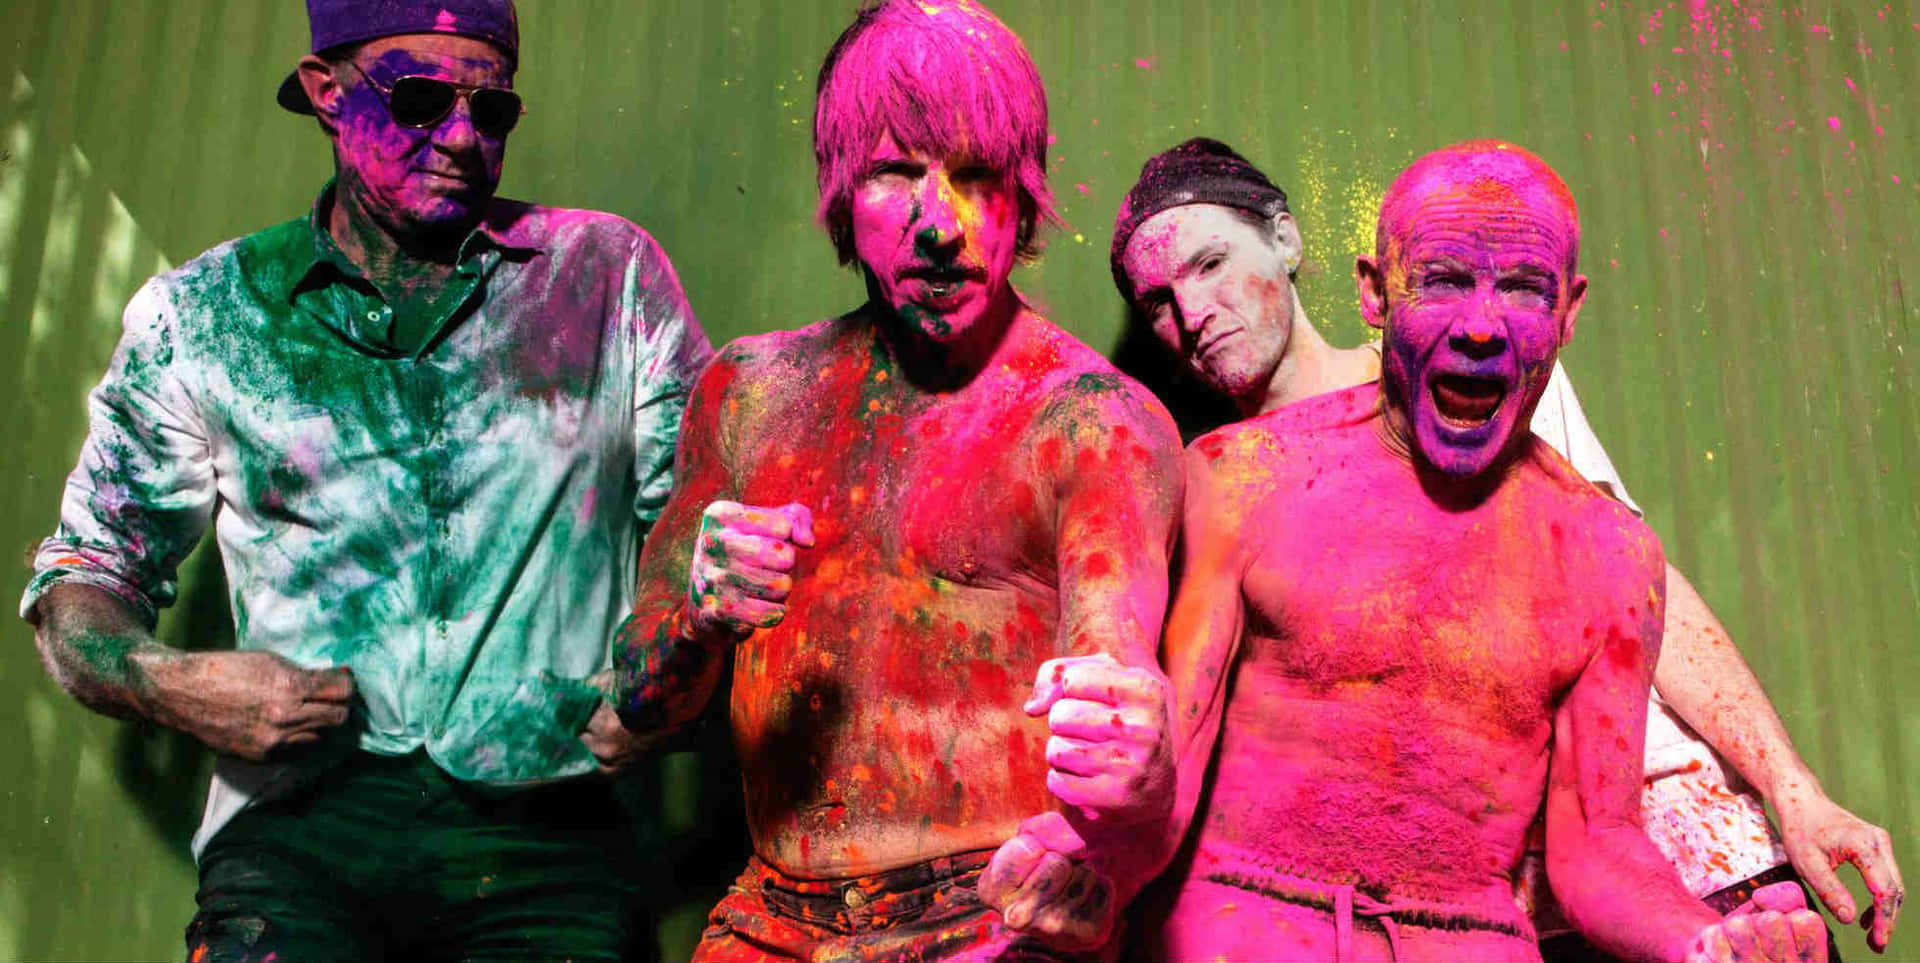 Holifestival - Eine Gruppe Von Männern Mit Farbe Im Gesicht. Wallpaper